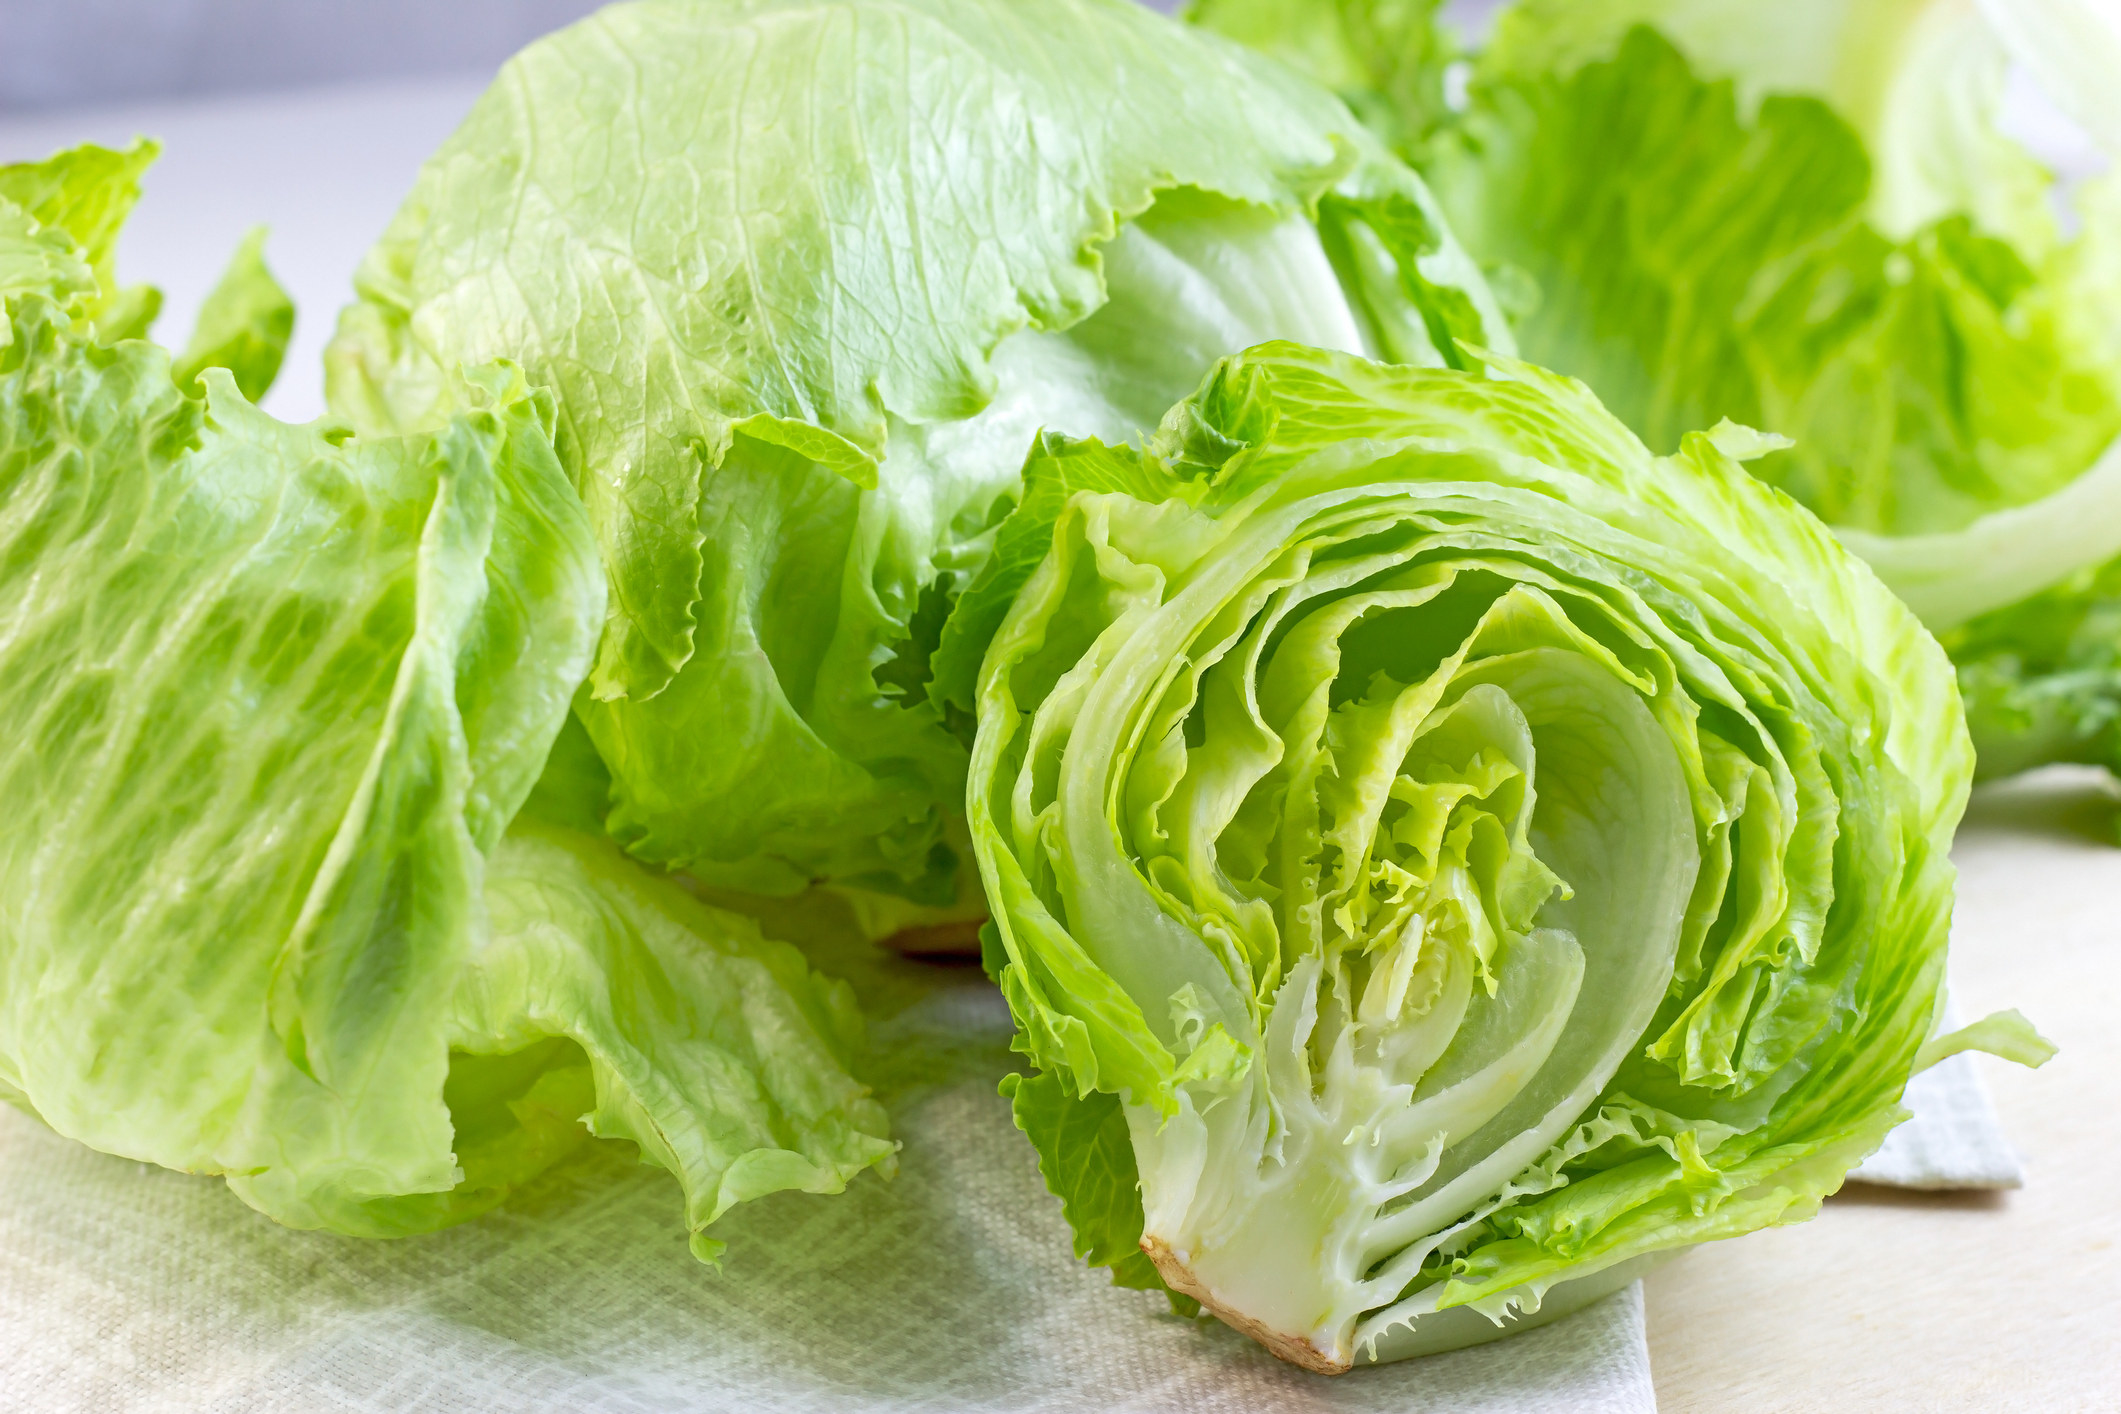 Heads of iceberg lettuce